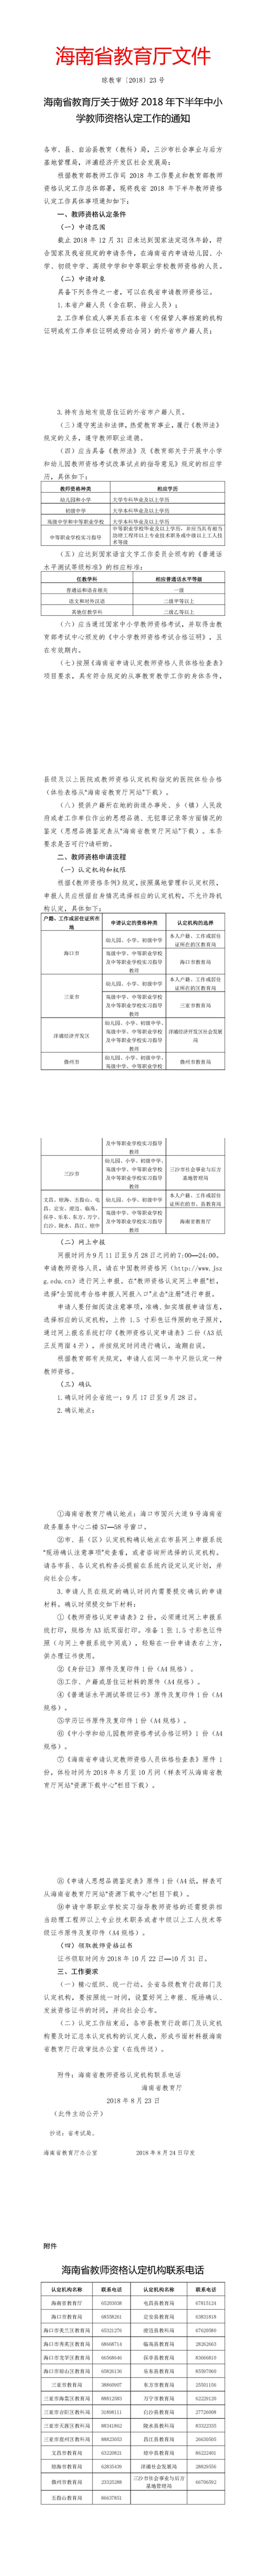 海南省2018年下半年中小学教师资格认定工作通知